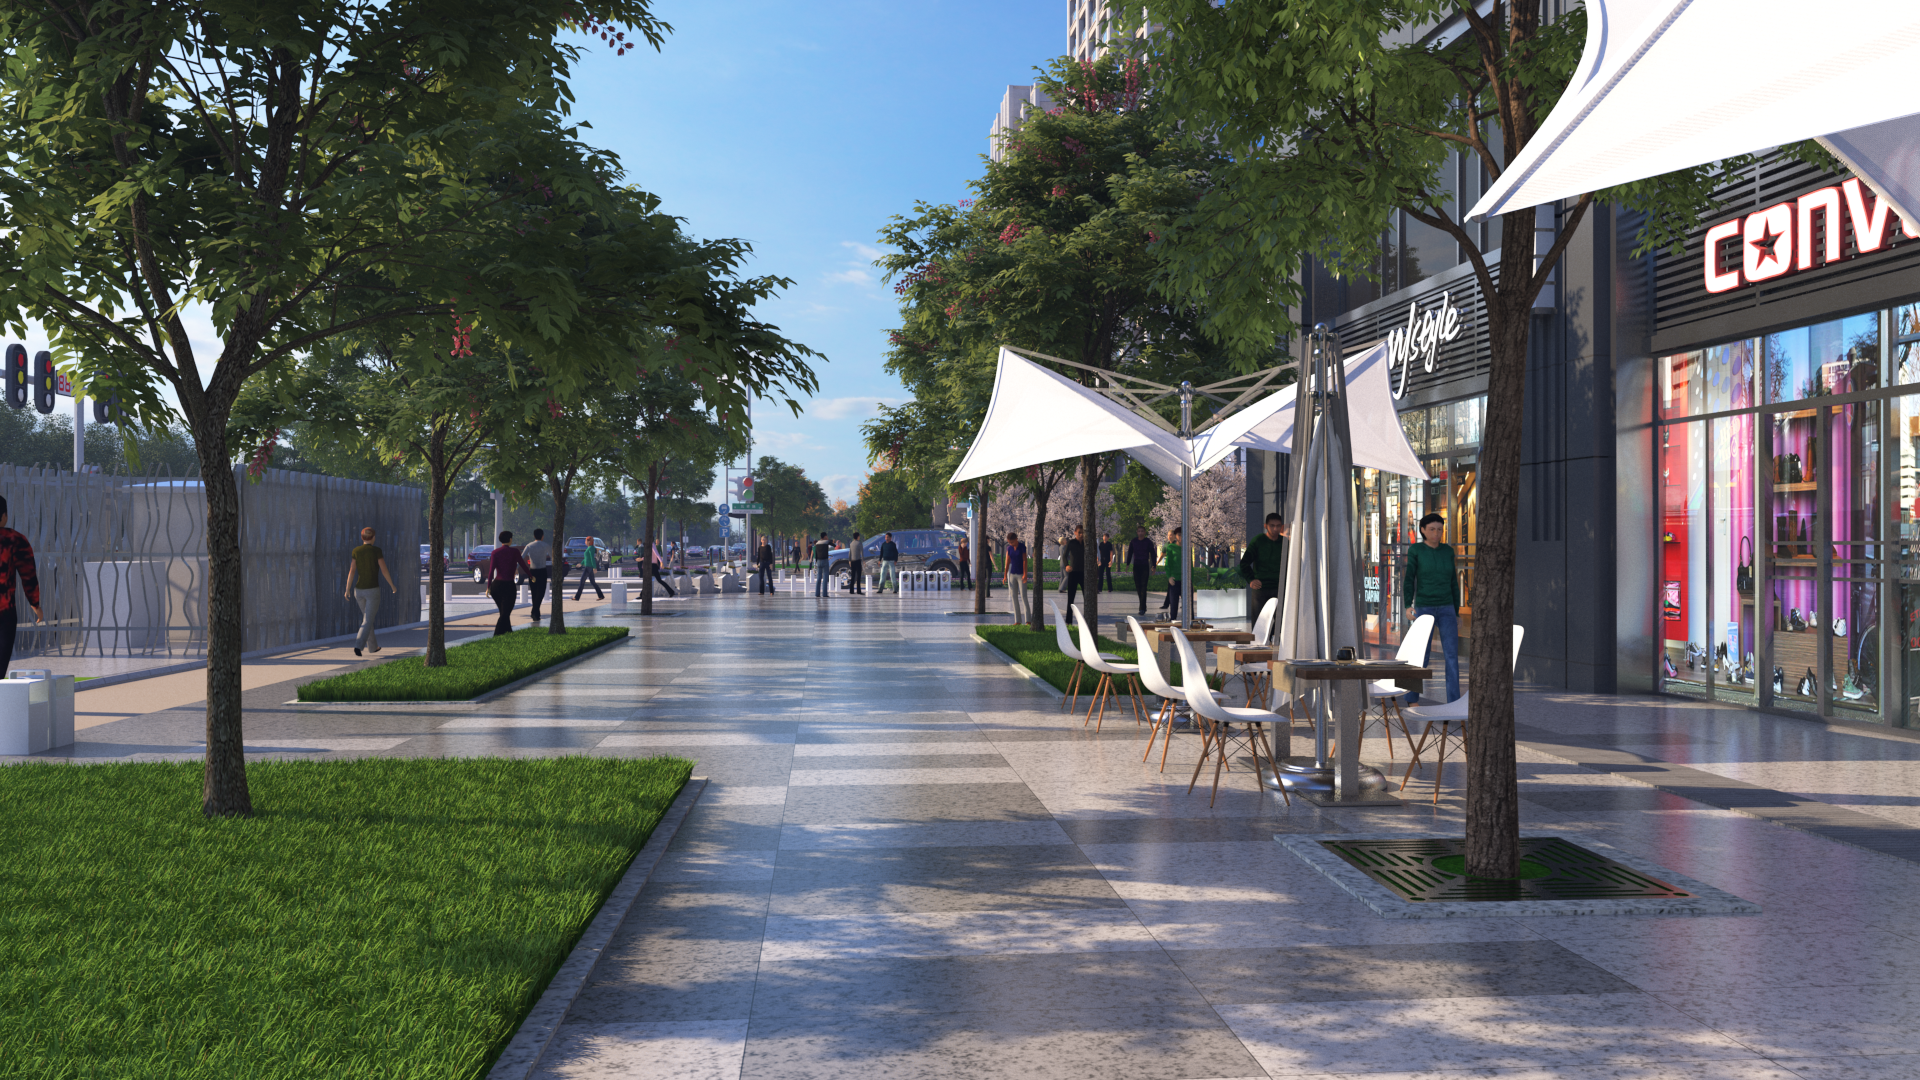 青竹湖片区项目将岸“四精五有”理念打造“公园式街道”“城市微客厅”。